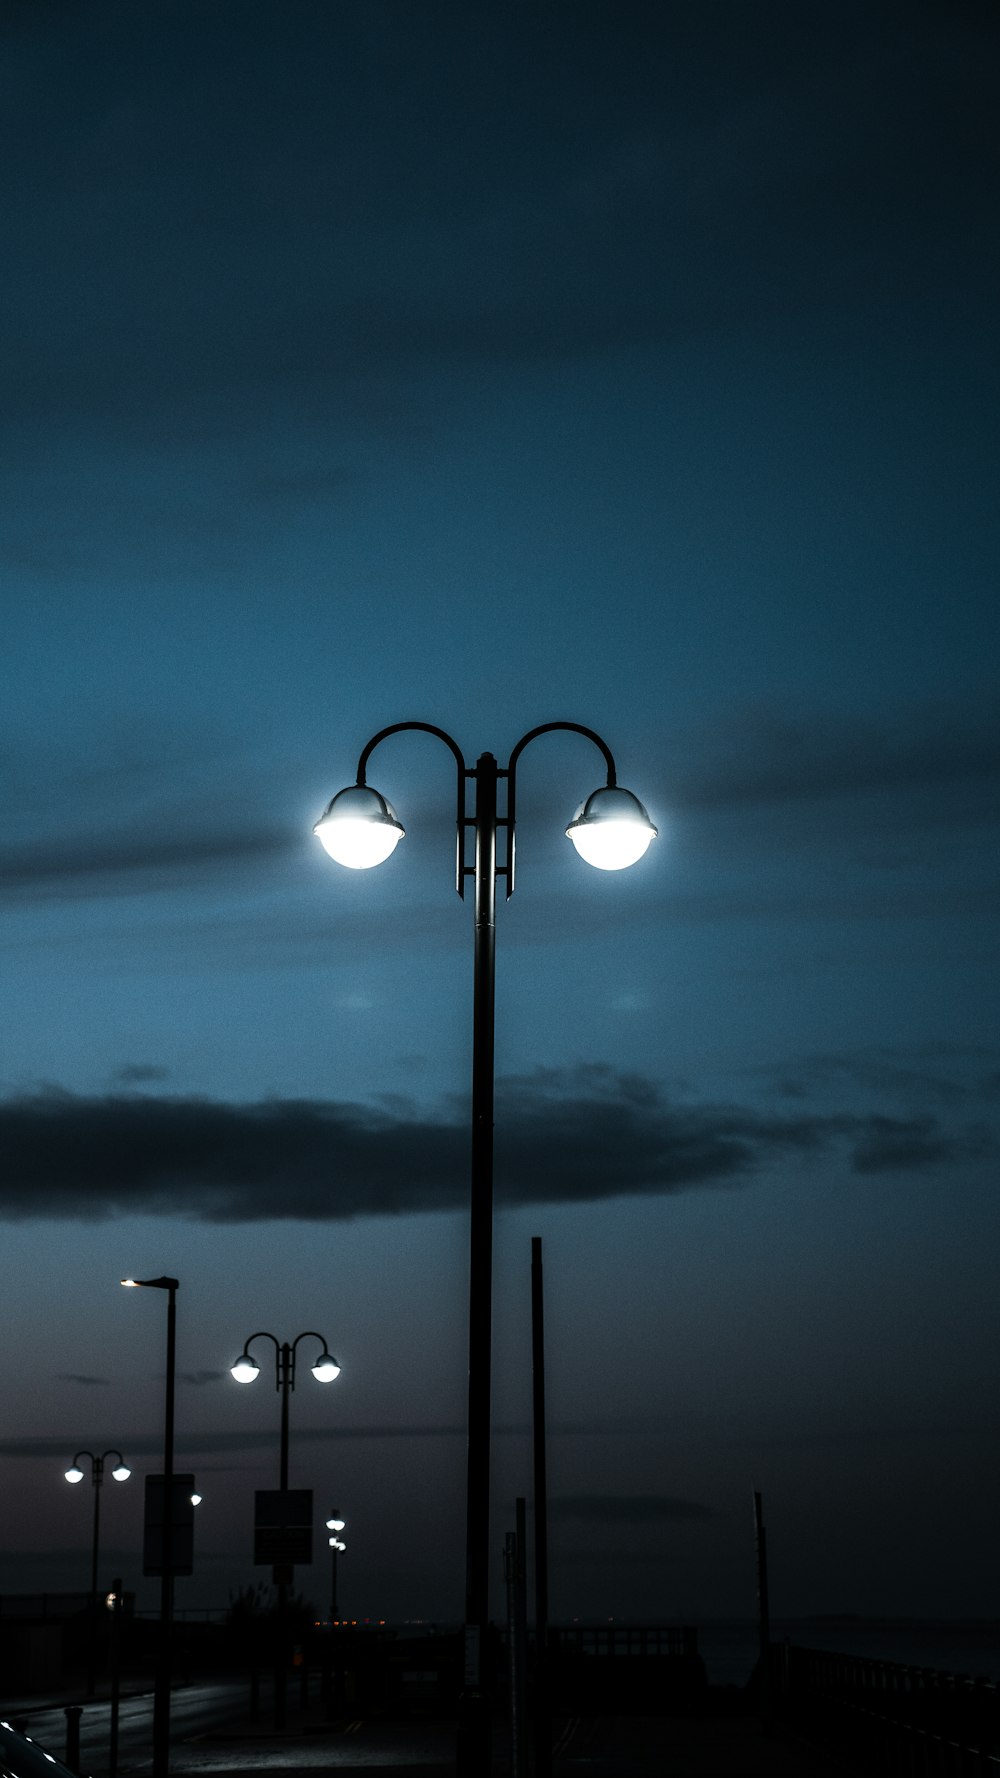 poste de luz emoldurado em metal preto durante a noite